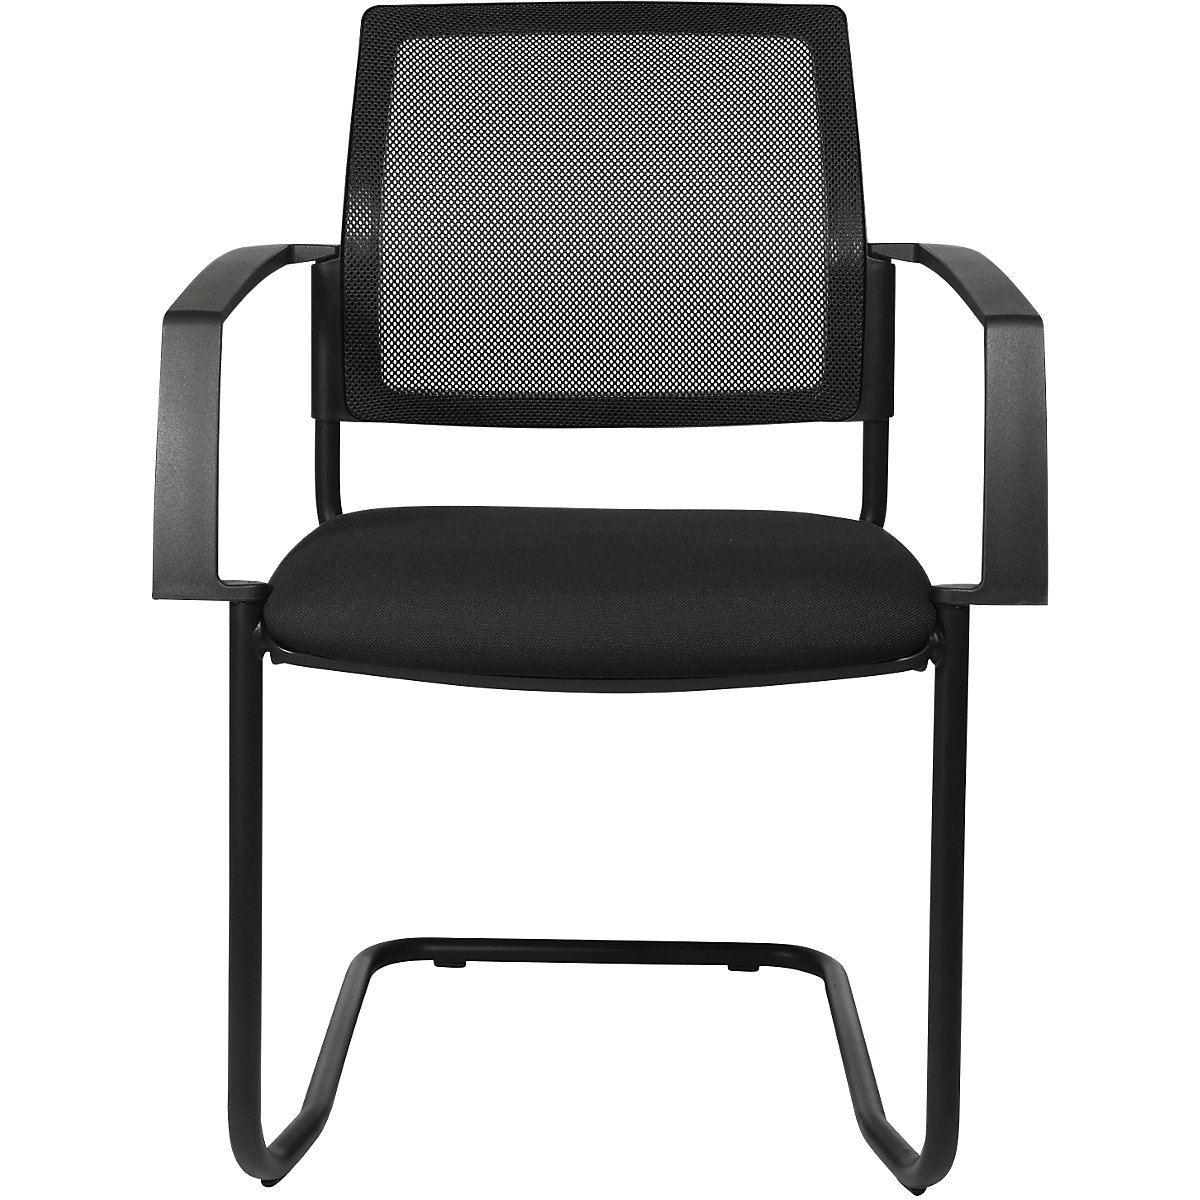 Síťovaná stohovací židle – Topstar